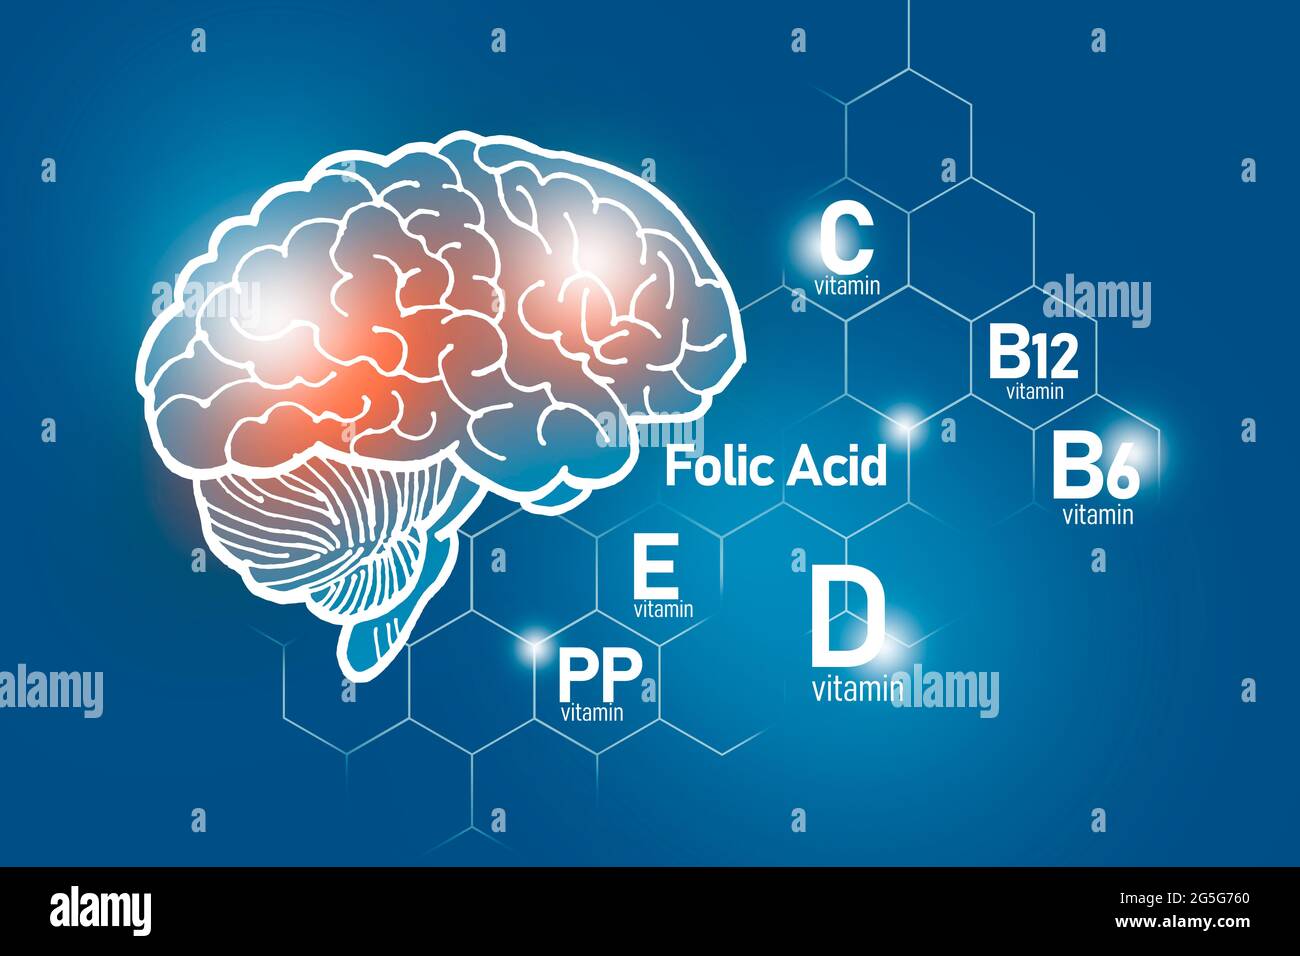 Essentielle Nährstoffe für die Gesundheit des Gehirns, einschließlich Vitamin C, Vitamin B, Folsäure, Vitamin PP. Design-Set der wichtigsten menschlichen Organe mit Vitaminen auf blau Stockfoto